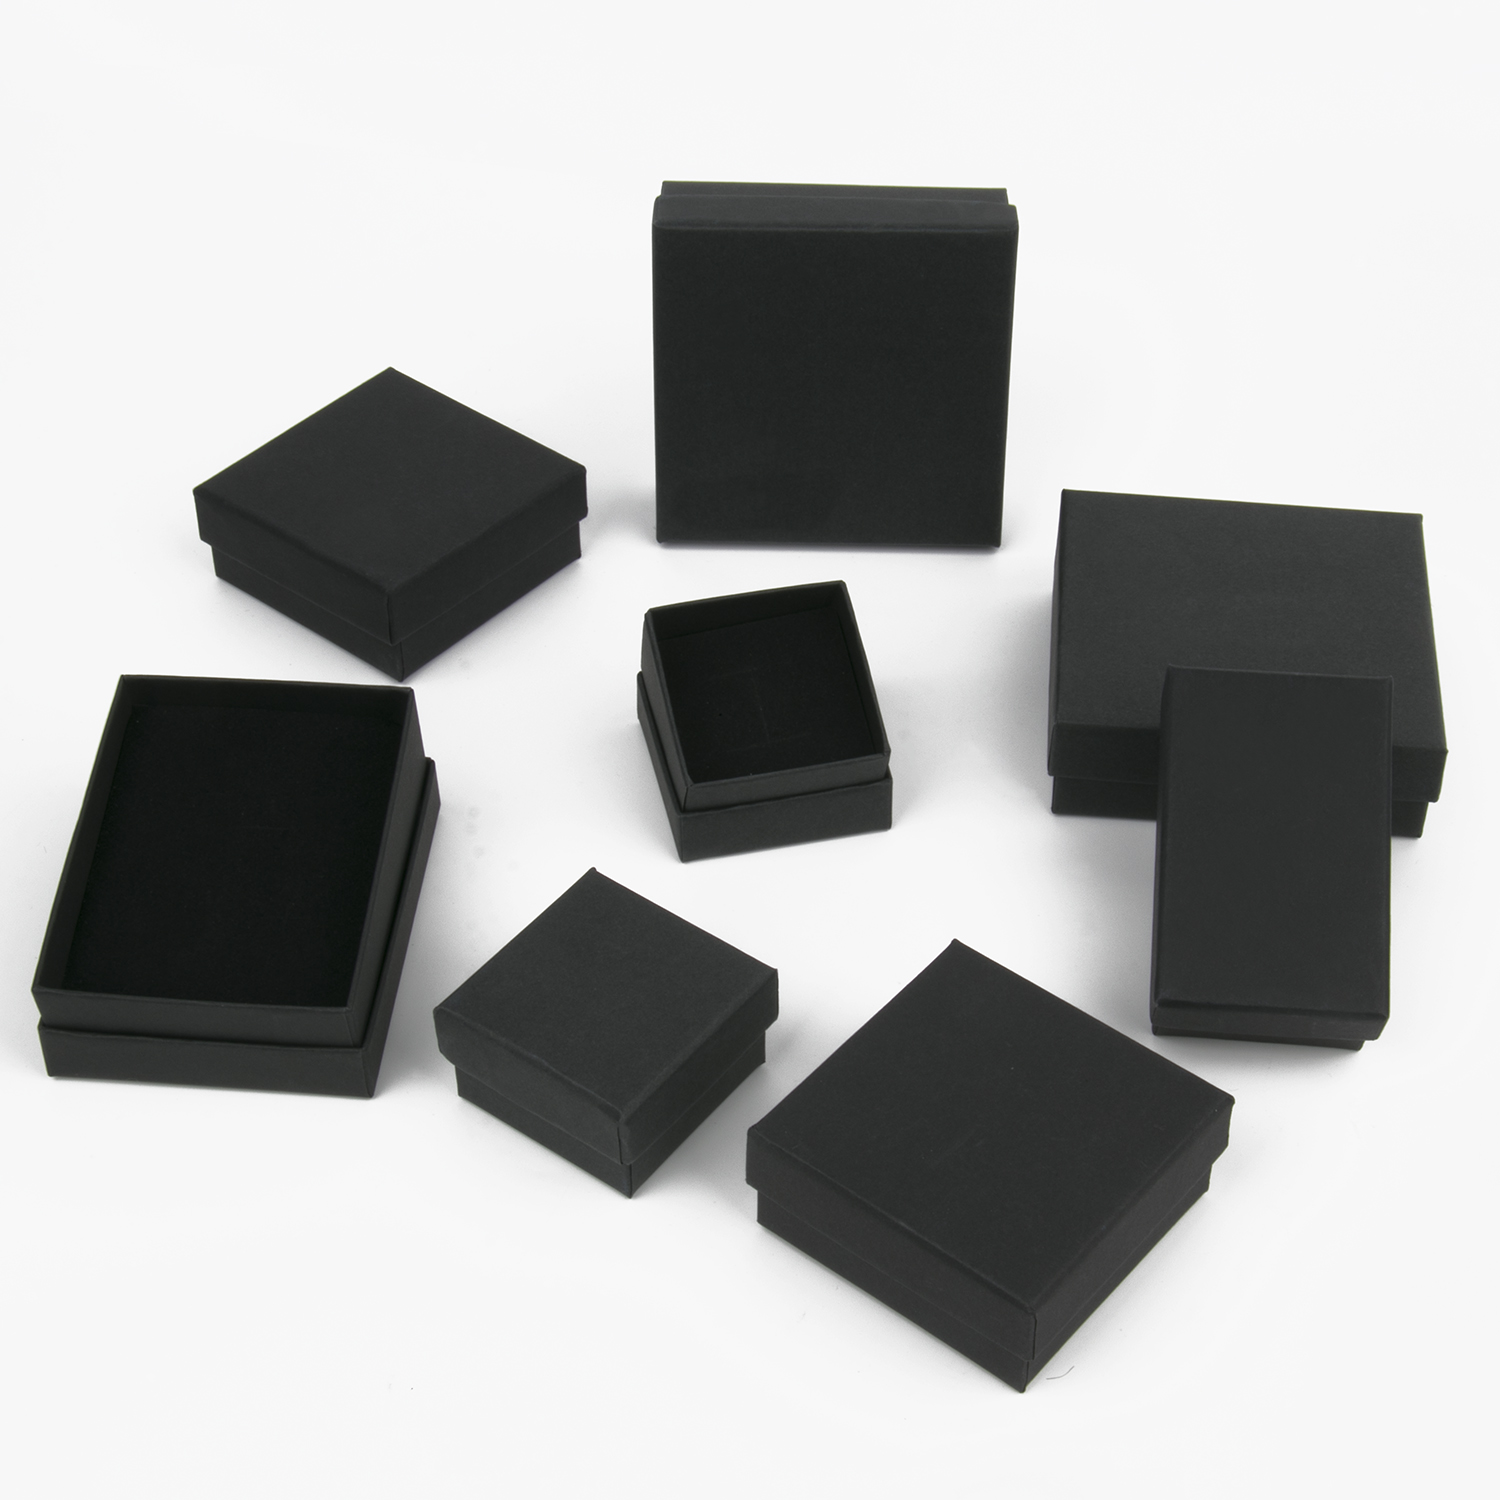 ブラックスクエアジュエリーディスプレイギフトボックスオーガナイザーエンゲージメントリングイヤリングブローチネックレスブレスレットパッケージボックス